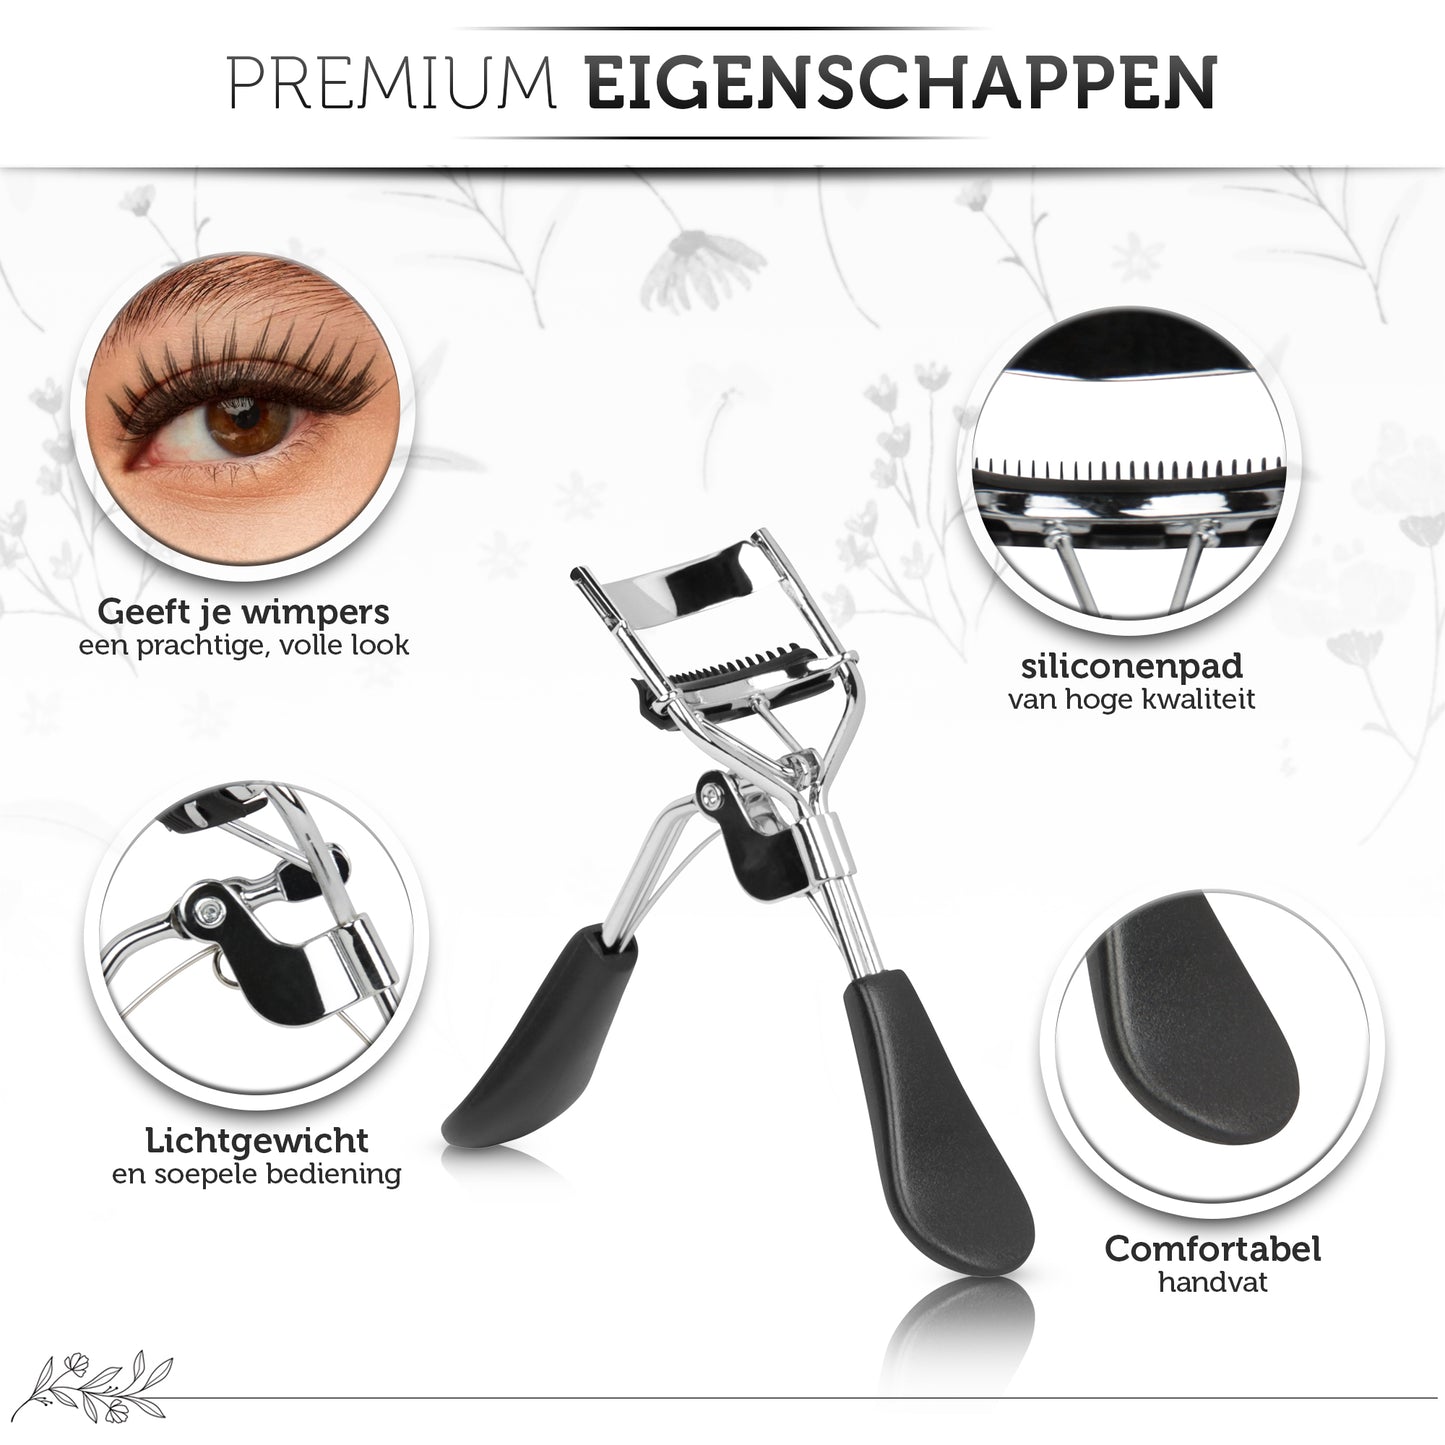 INTER-ESQUE® Wimperkruller Met Kam - Eyelash Curler + 5x Gratis Extra Siliconen Pad - Zwart/Zilver